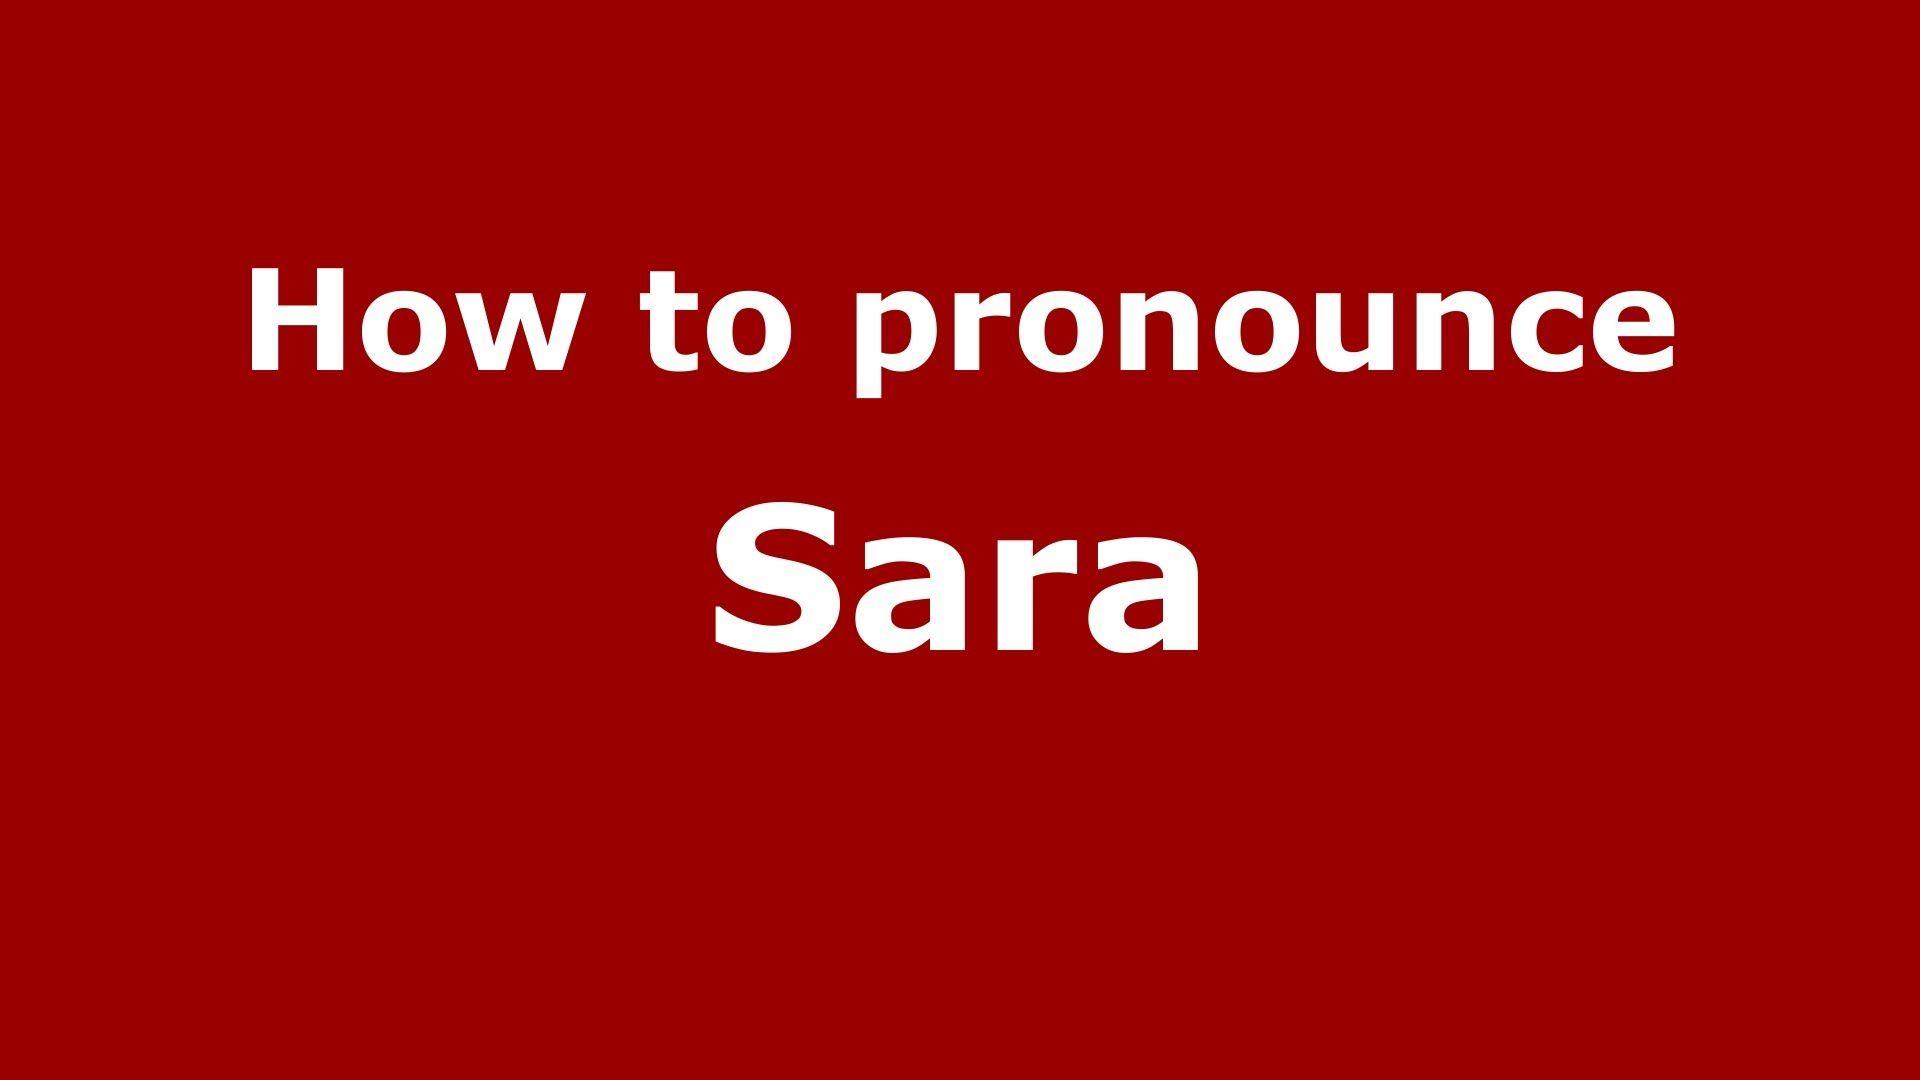 How to pronounce Sara